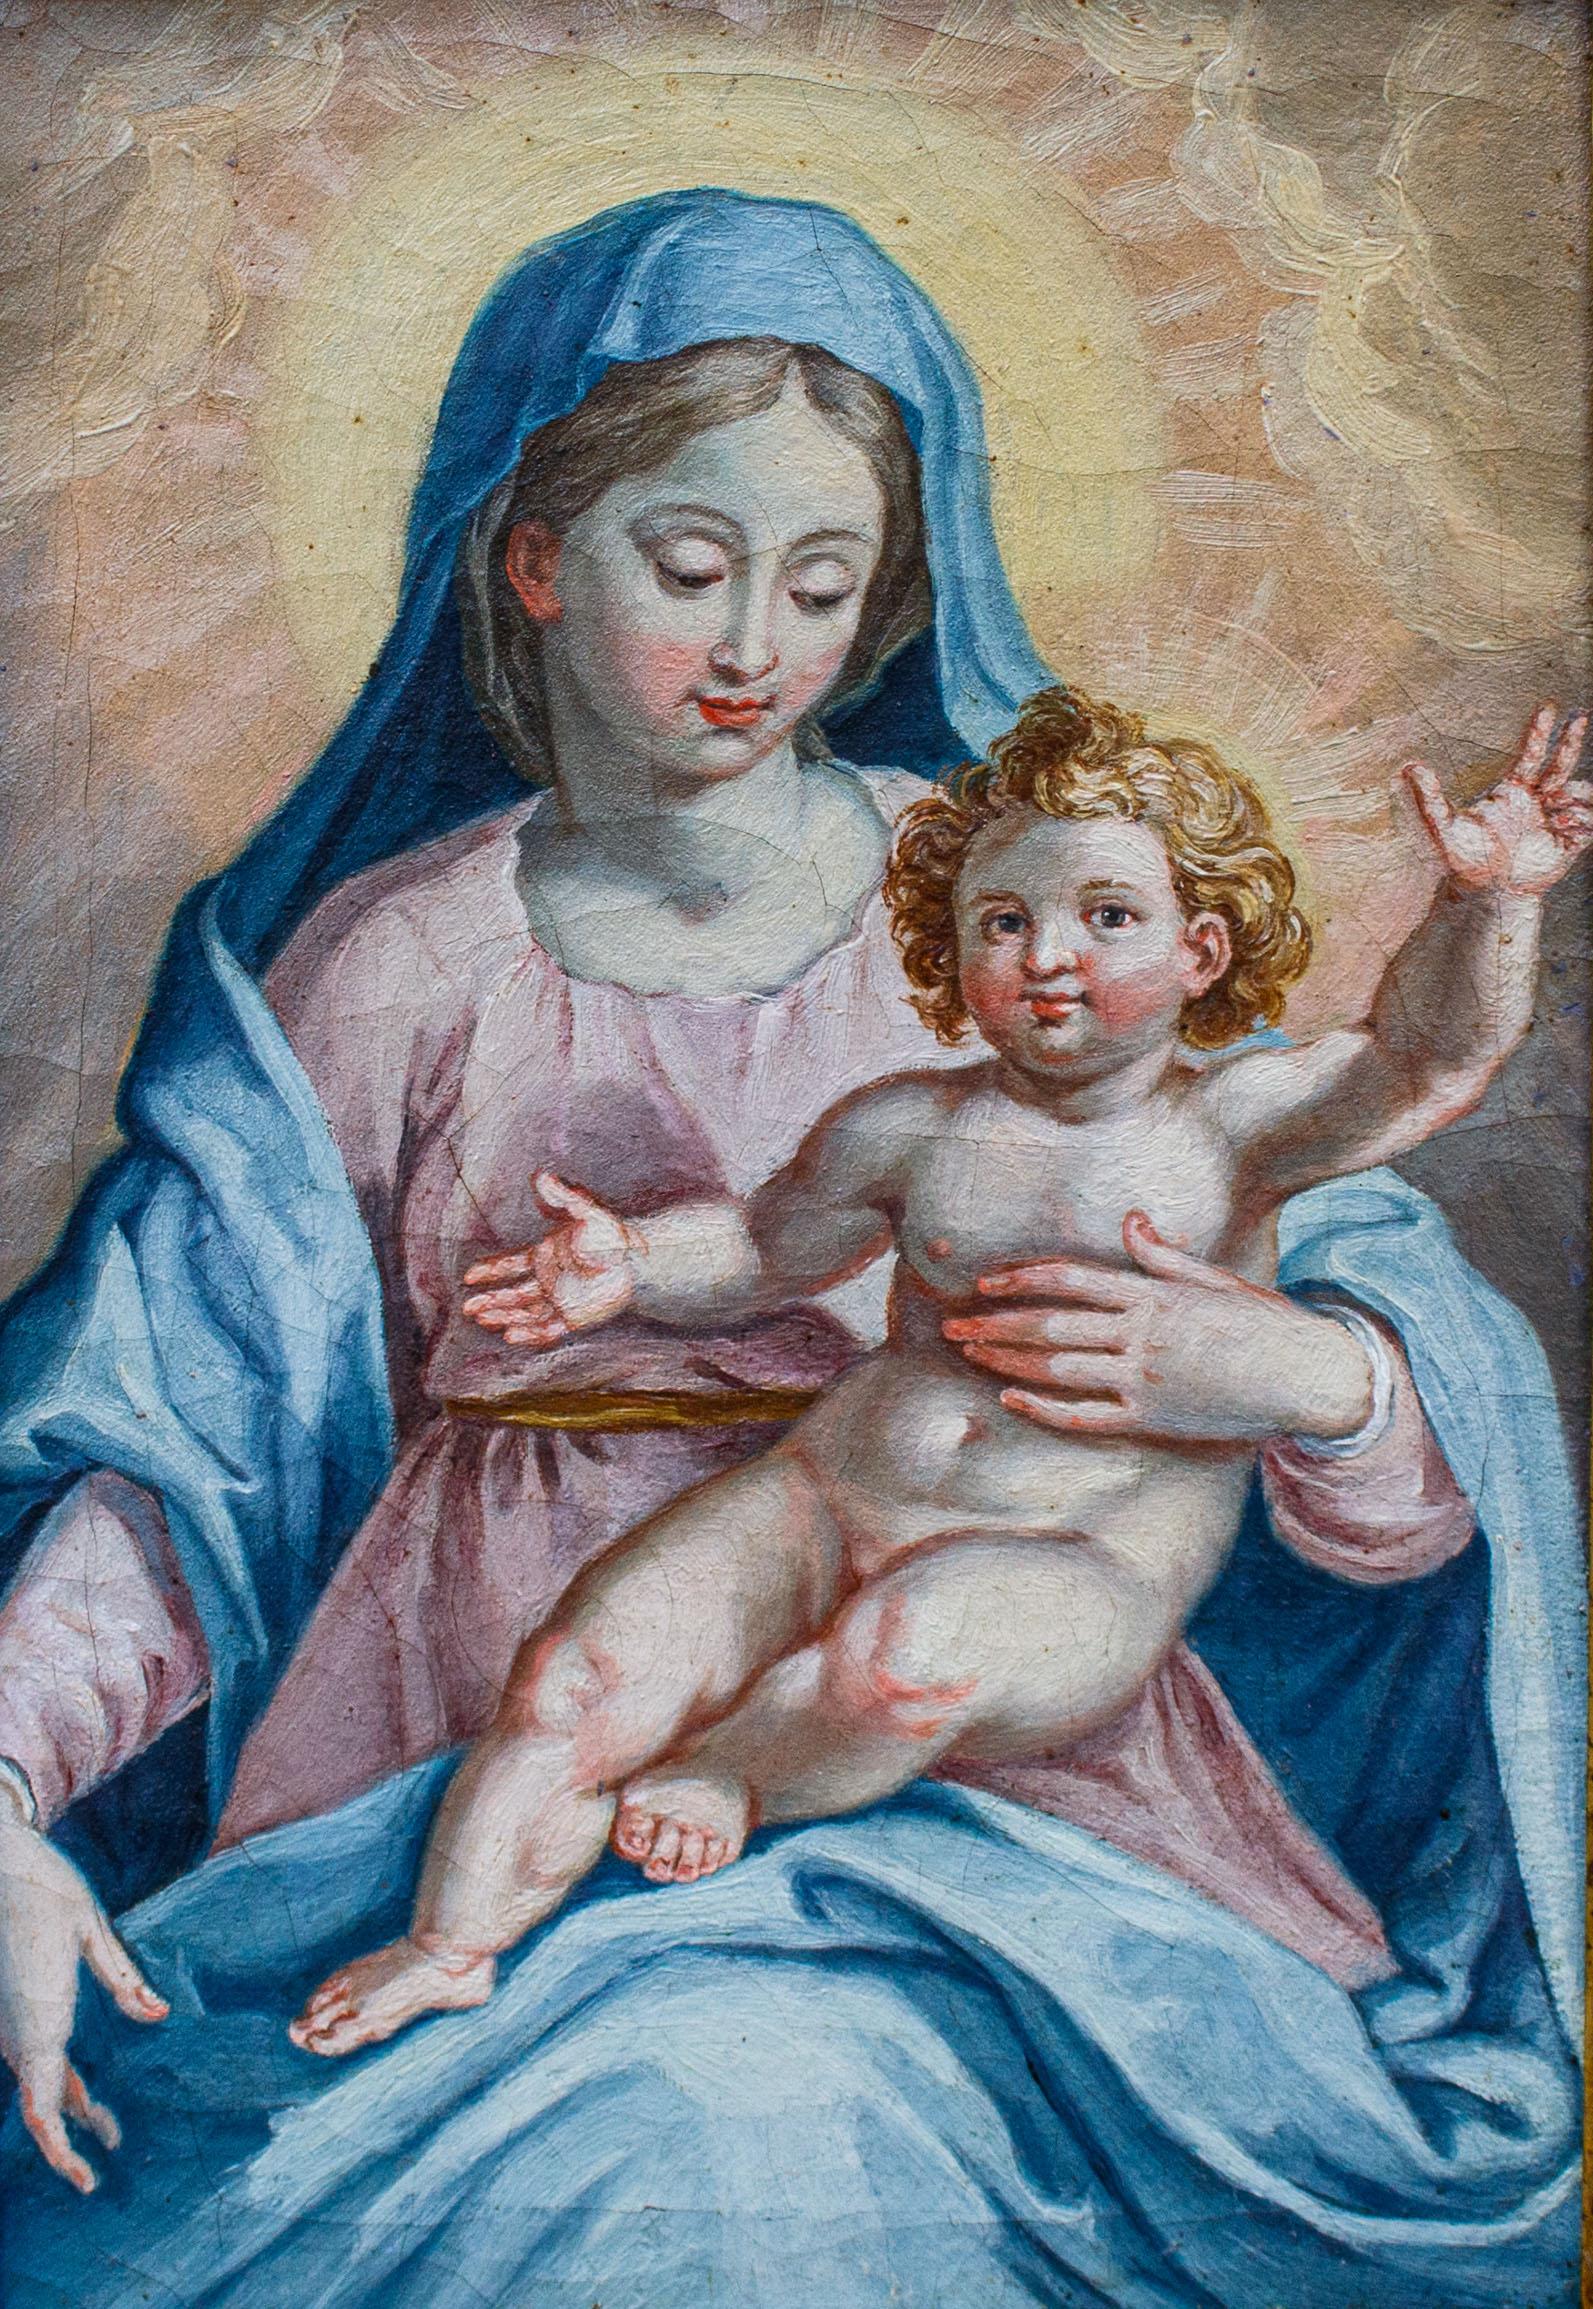 17. Jahrhundert, Toskanische Schule

Madonna mit Kind

Öl auf Leinwand, 31 x 21 cm

Mit Rahmen, cm 37,5 x 27,5

Die perlenden Inkarnationen und das nachdenkliche Spiel der Blicke zwischen der Jungfrau, die sich dem Sohn zuwendet, und Questi, die